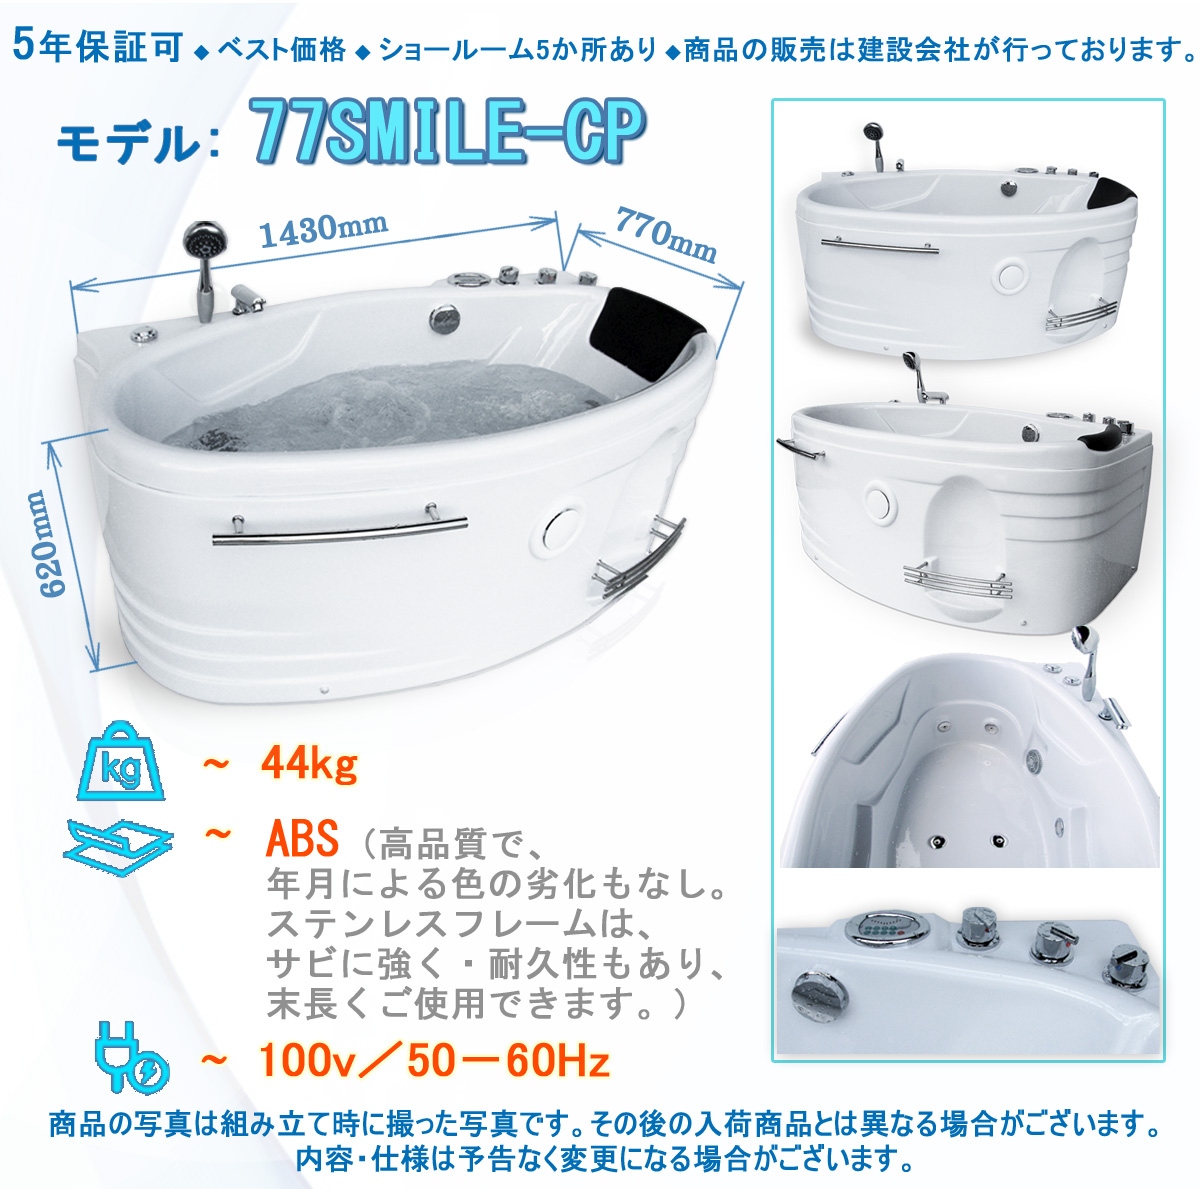 純正売り2年間の長期保証 77SMILE-S 143x77x62h ジャグジーバス ジャグジー浴槽 ハンドシャワー付き 設置工事簡単 リフォームに最適 浴槽、バスタブ一般